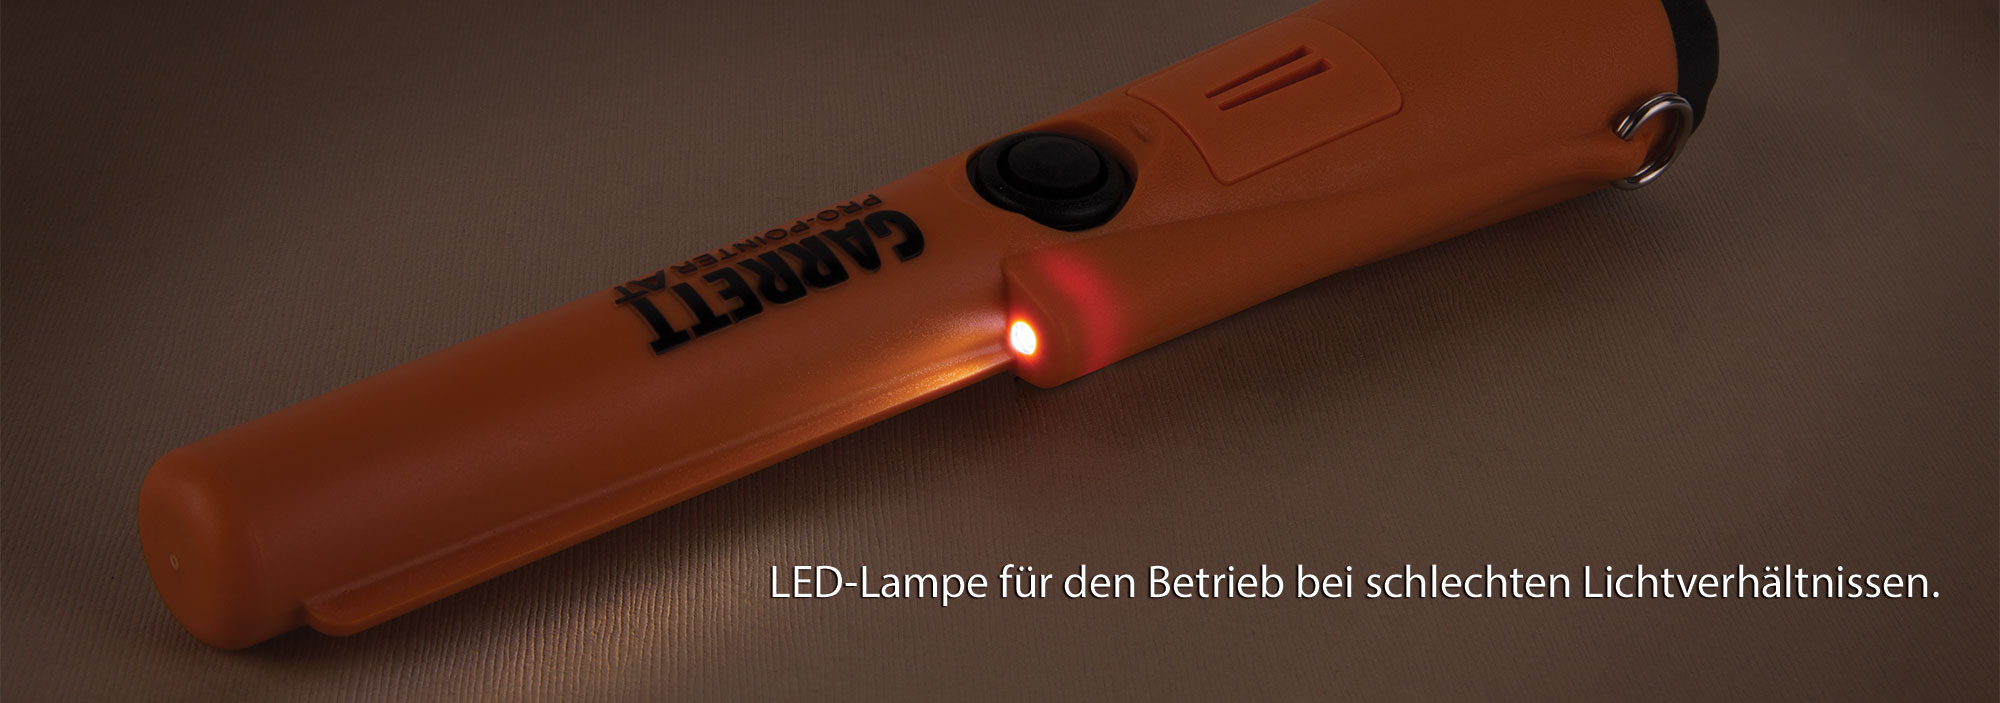 LED-Lampe für den Betrieb bei schlechten Lichtverhältnissen。